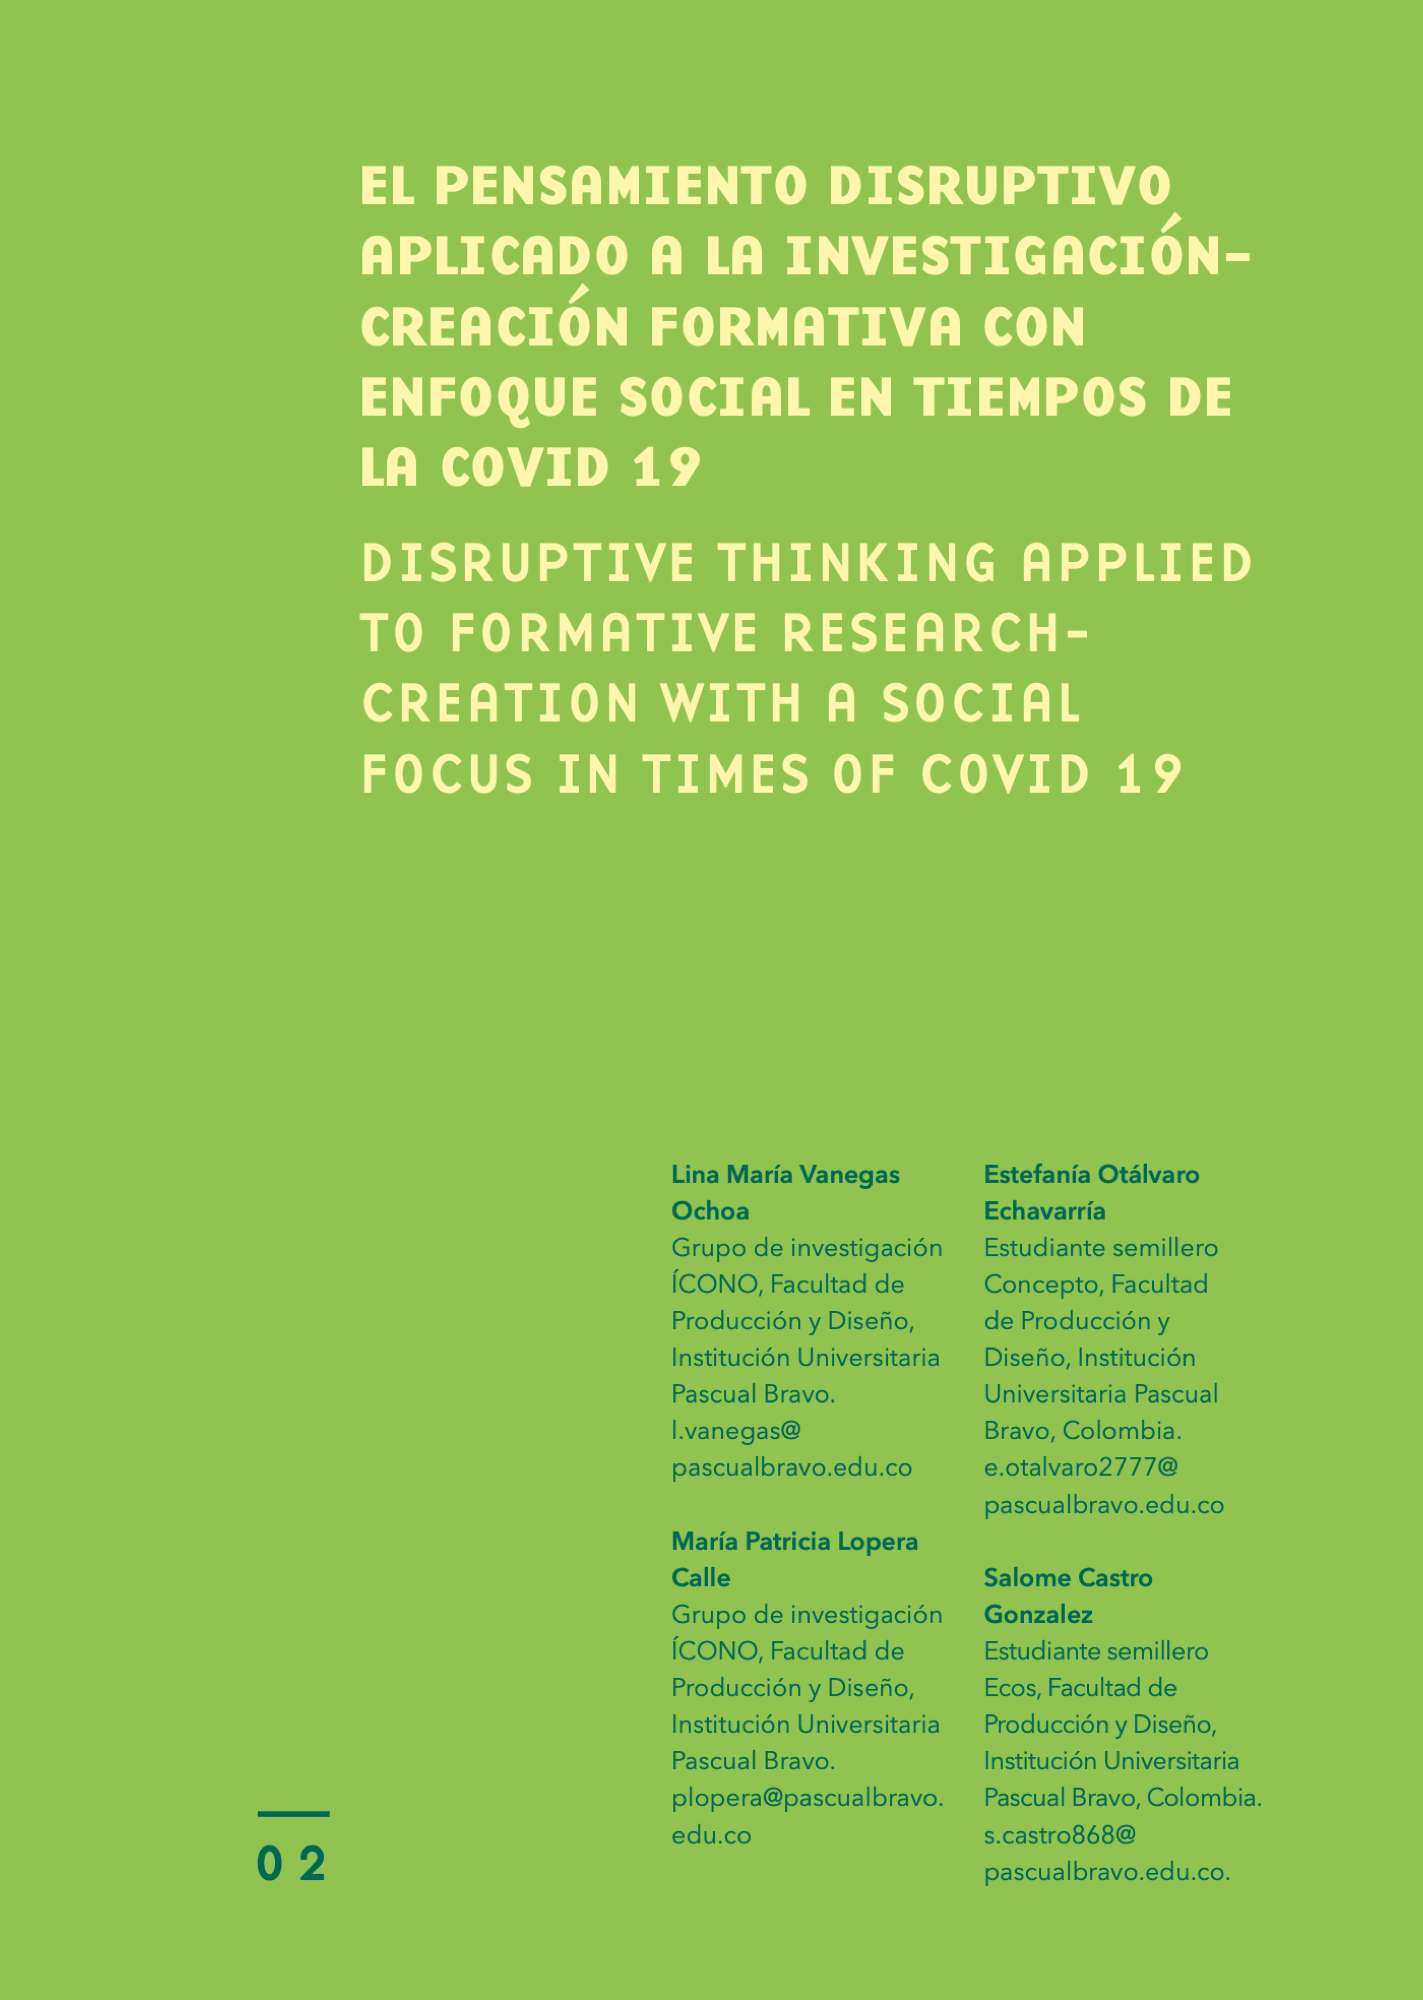 El pensamiento disruptivo aplicado a la investigación-creación formativa con enfoque social en tiempos de La Covid 19